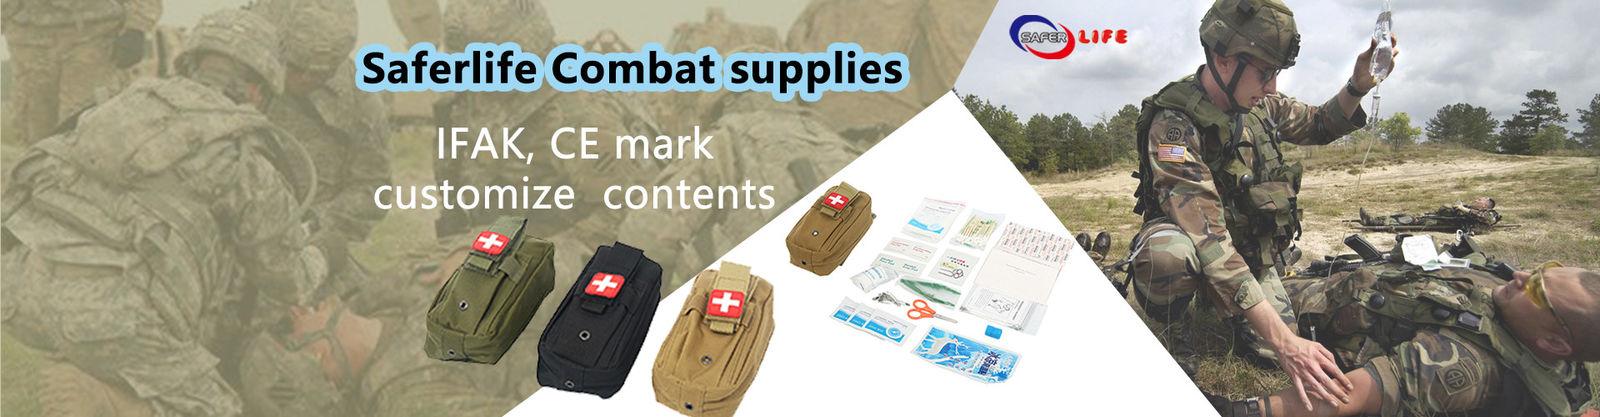 First Aid Equipment Supplies